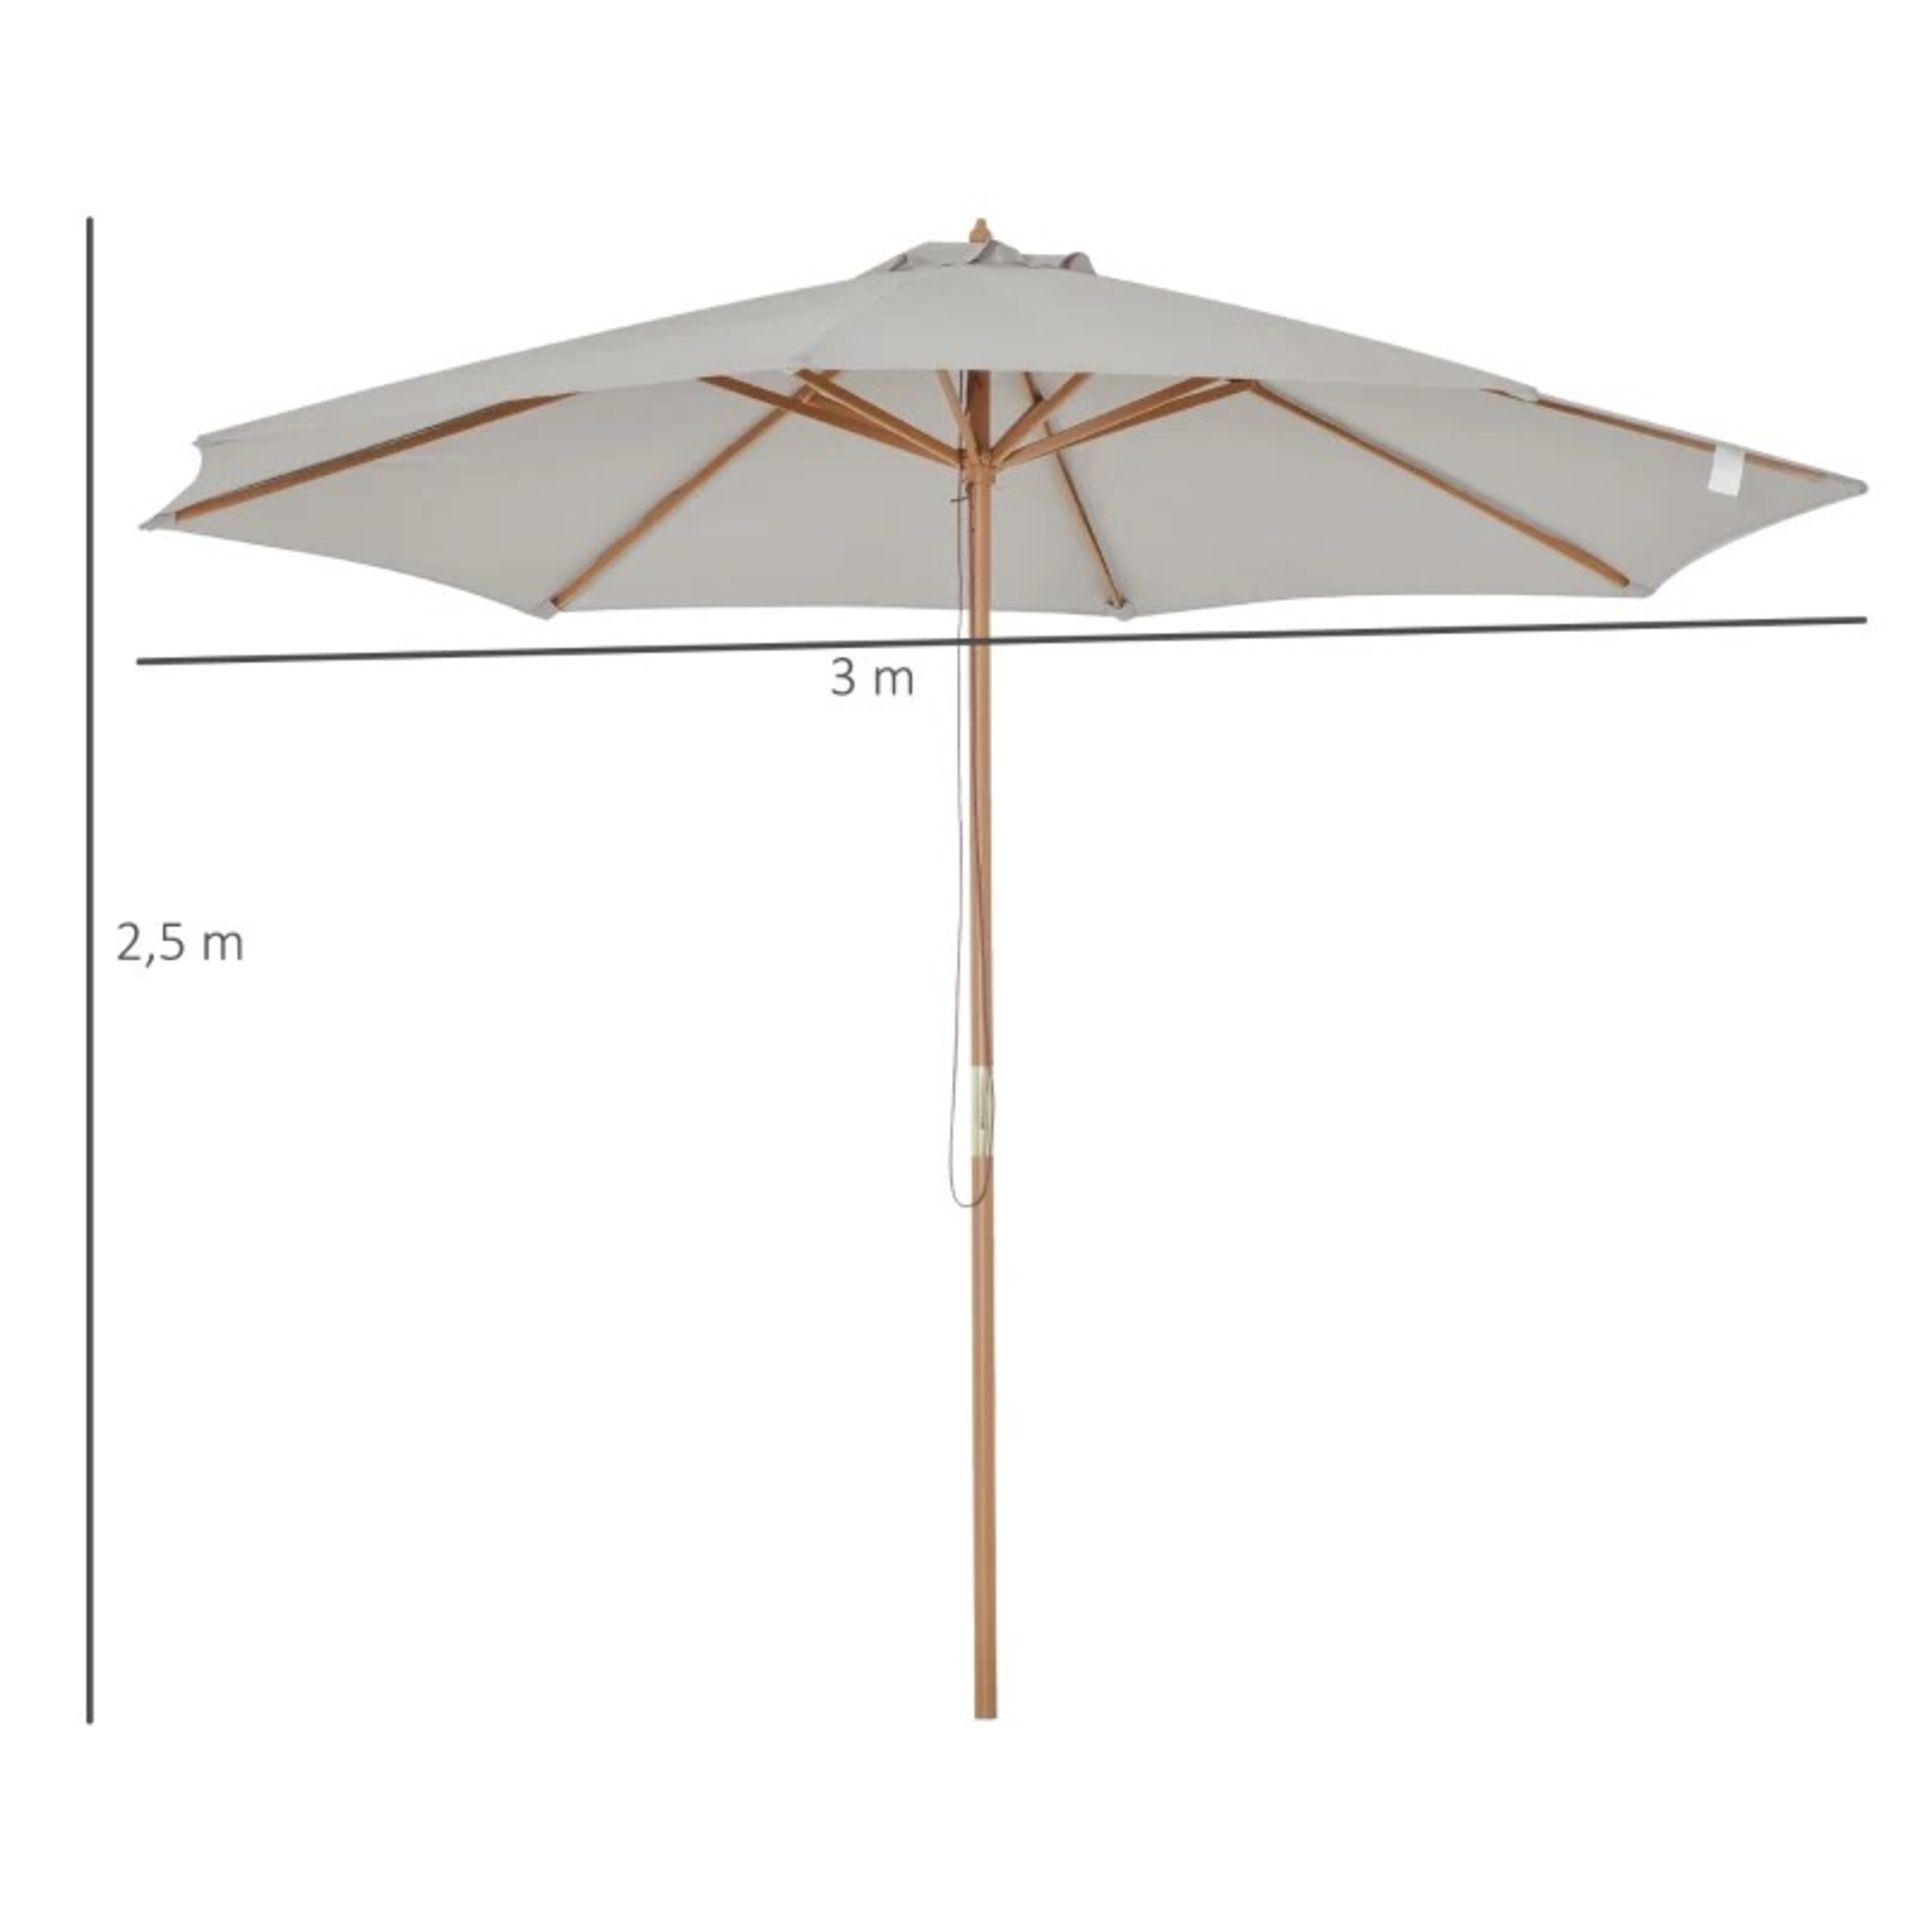 RRP £65.99 - 3m Fir Wooden Garden Parasol Bamboo Sun Shade Patio Outdoor Umbrella Canopy - - Image 2 of 4